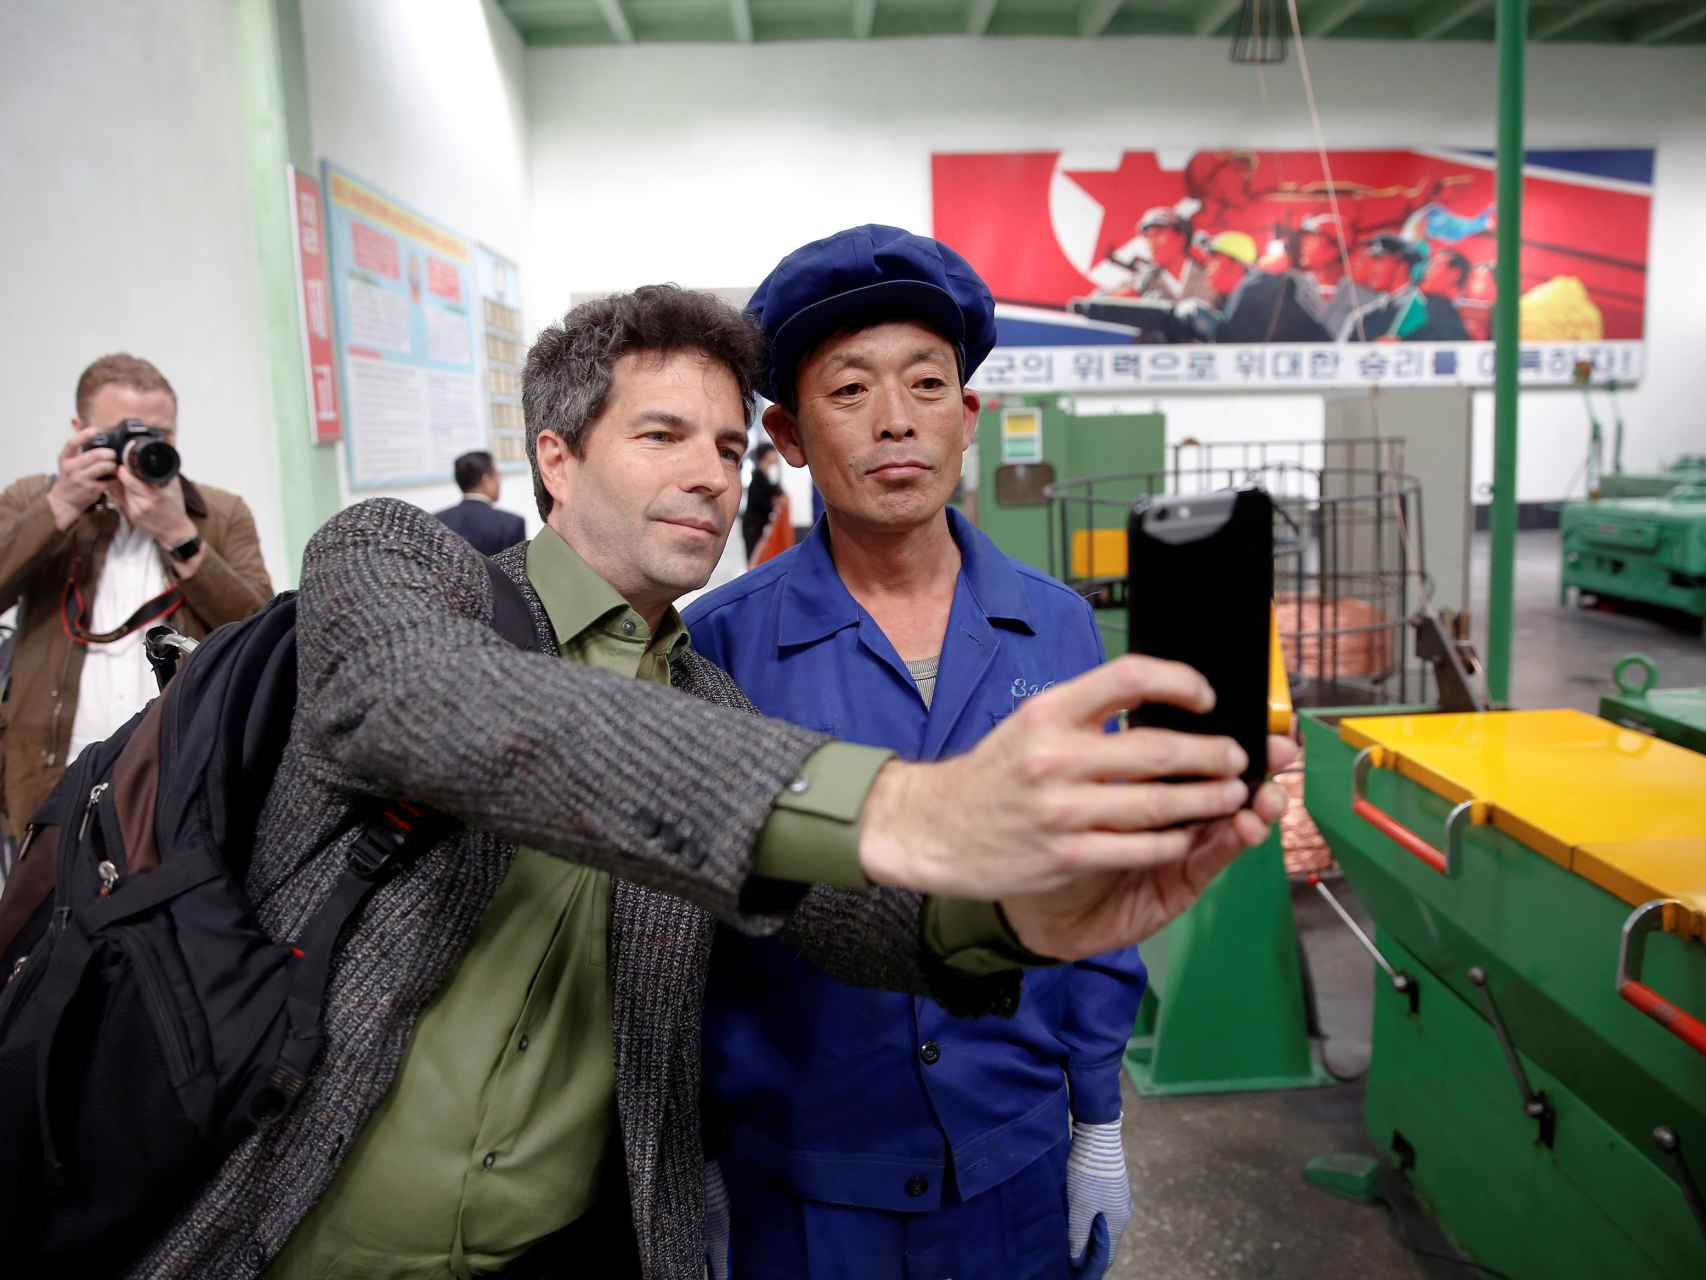 Un periodista extranjero se fotografía con un trabajador durante una visita organizada.